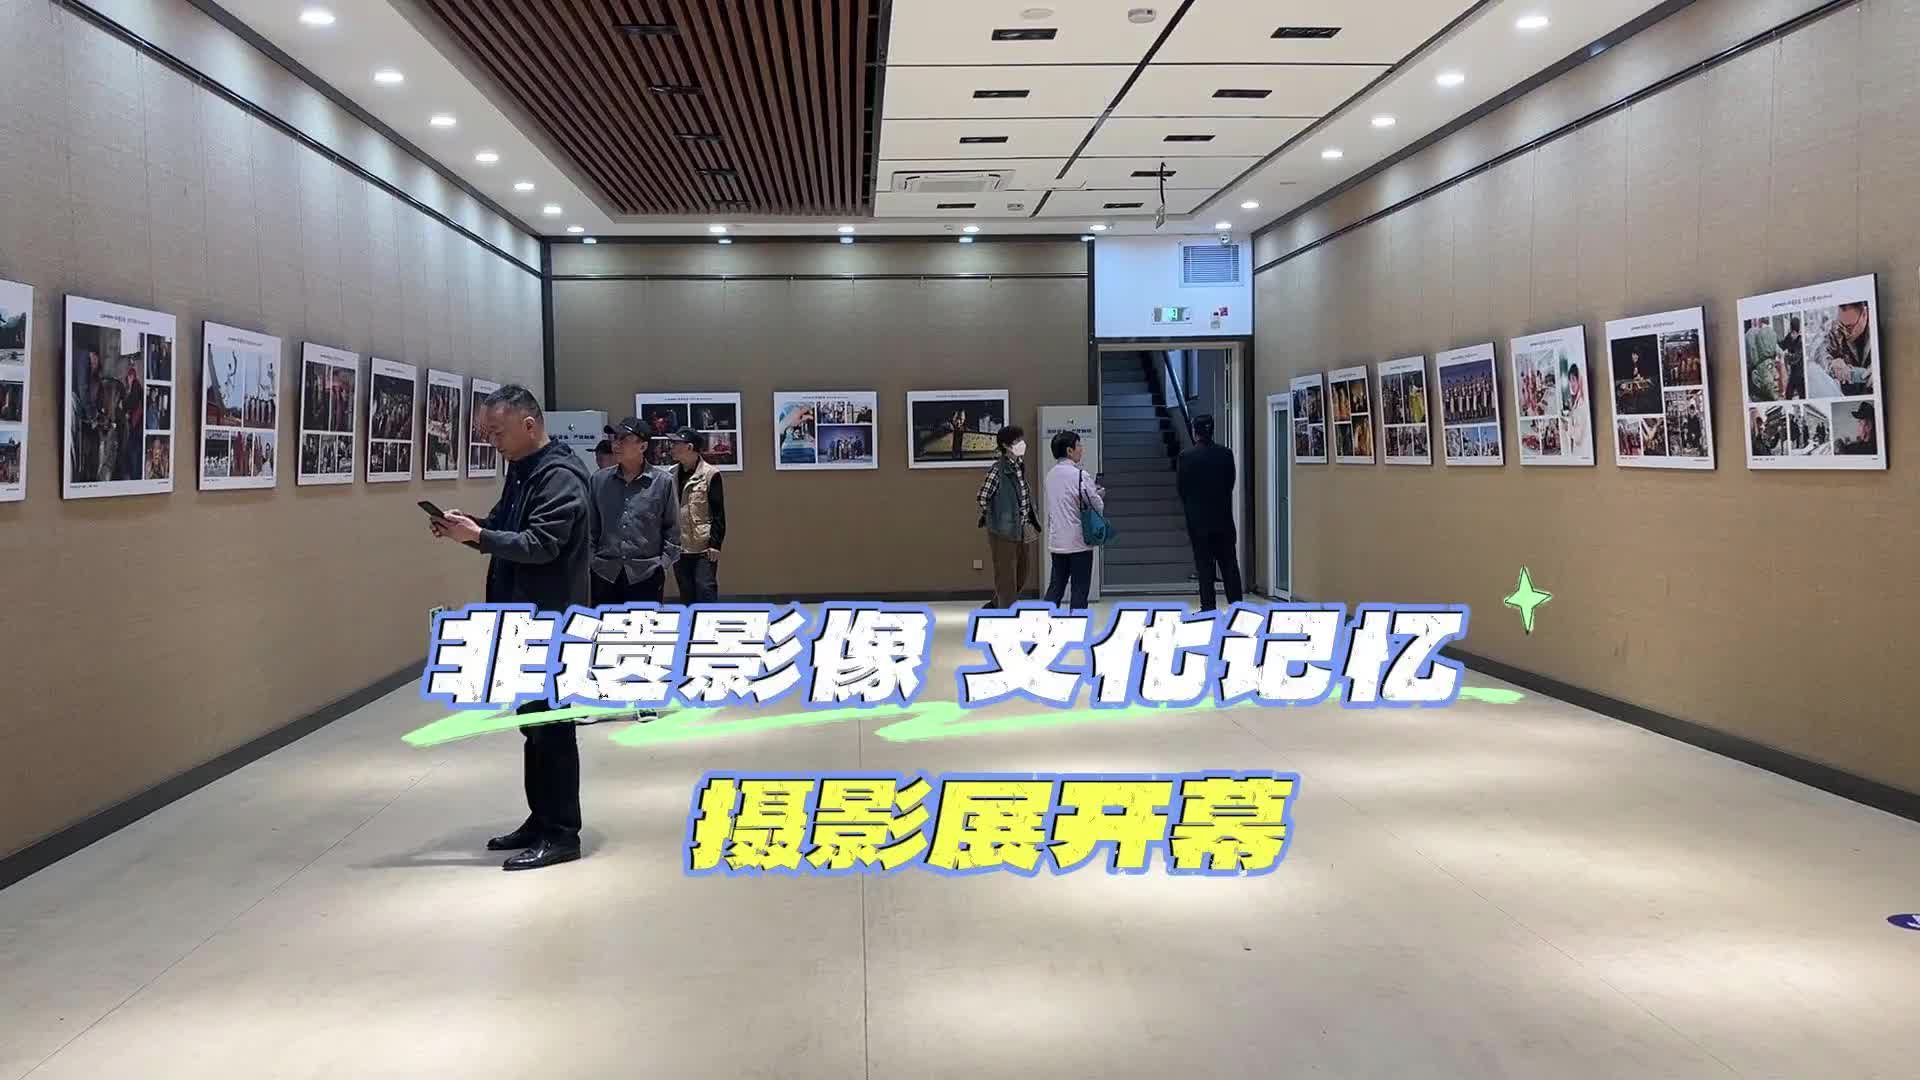 更济宁 | “非遗影像 文化记忆”摄影展开幕